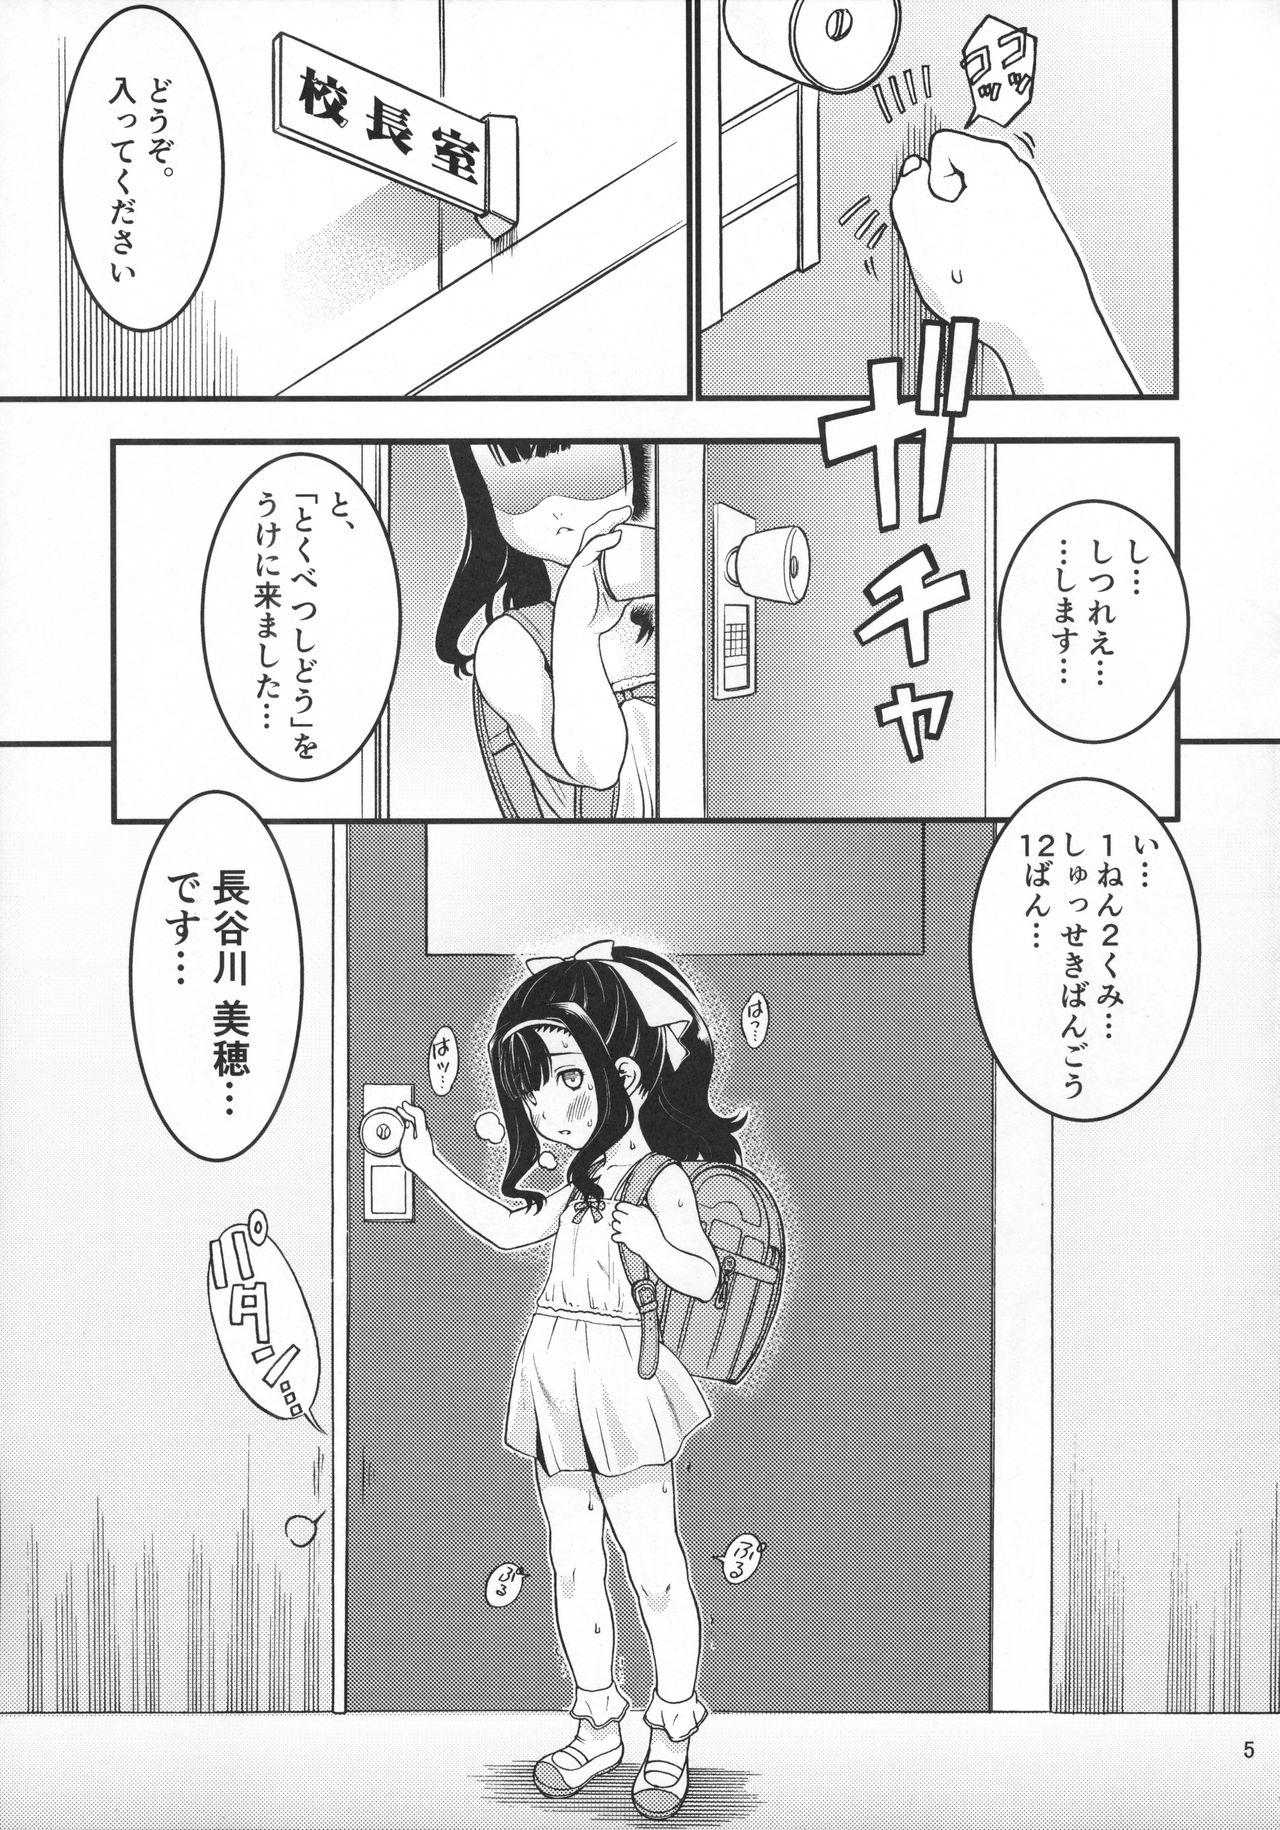 Threeway Heisei 29-nendo Tokushu Ginou Yuushuu Seito Shidou Youkou Hymen - Page 7